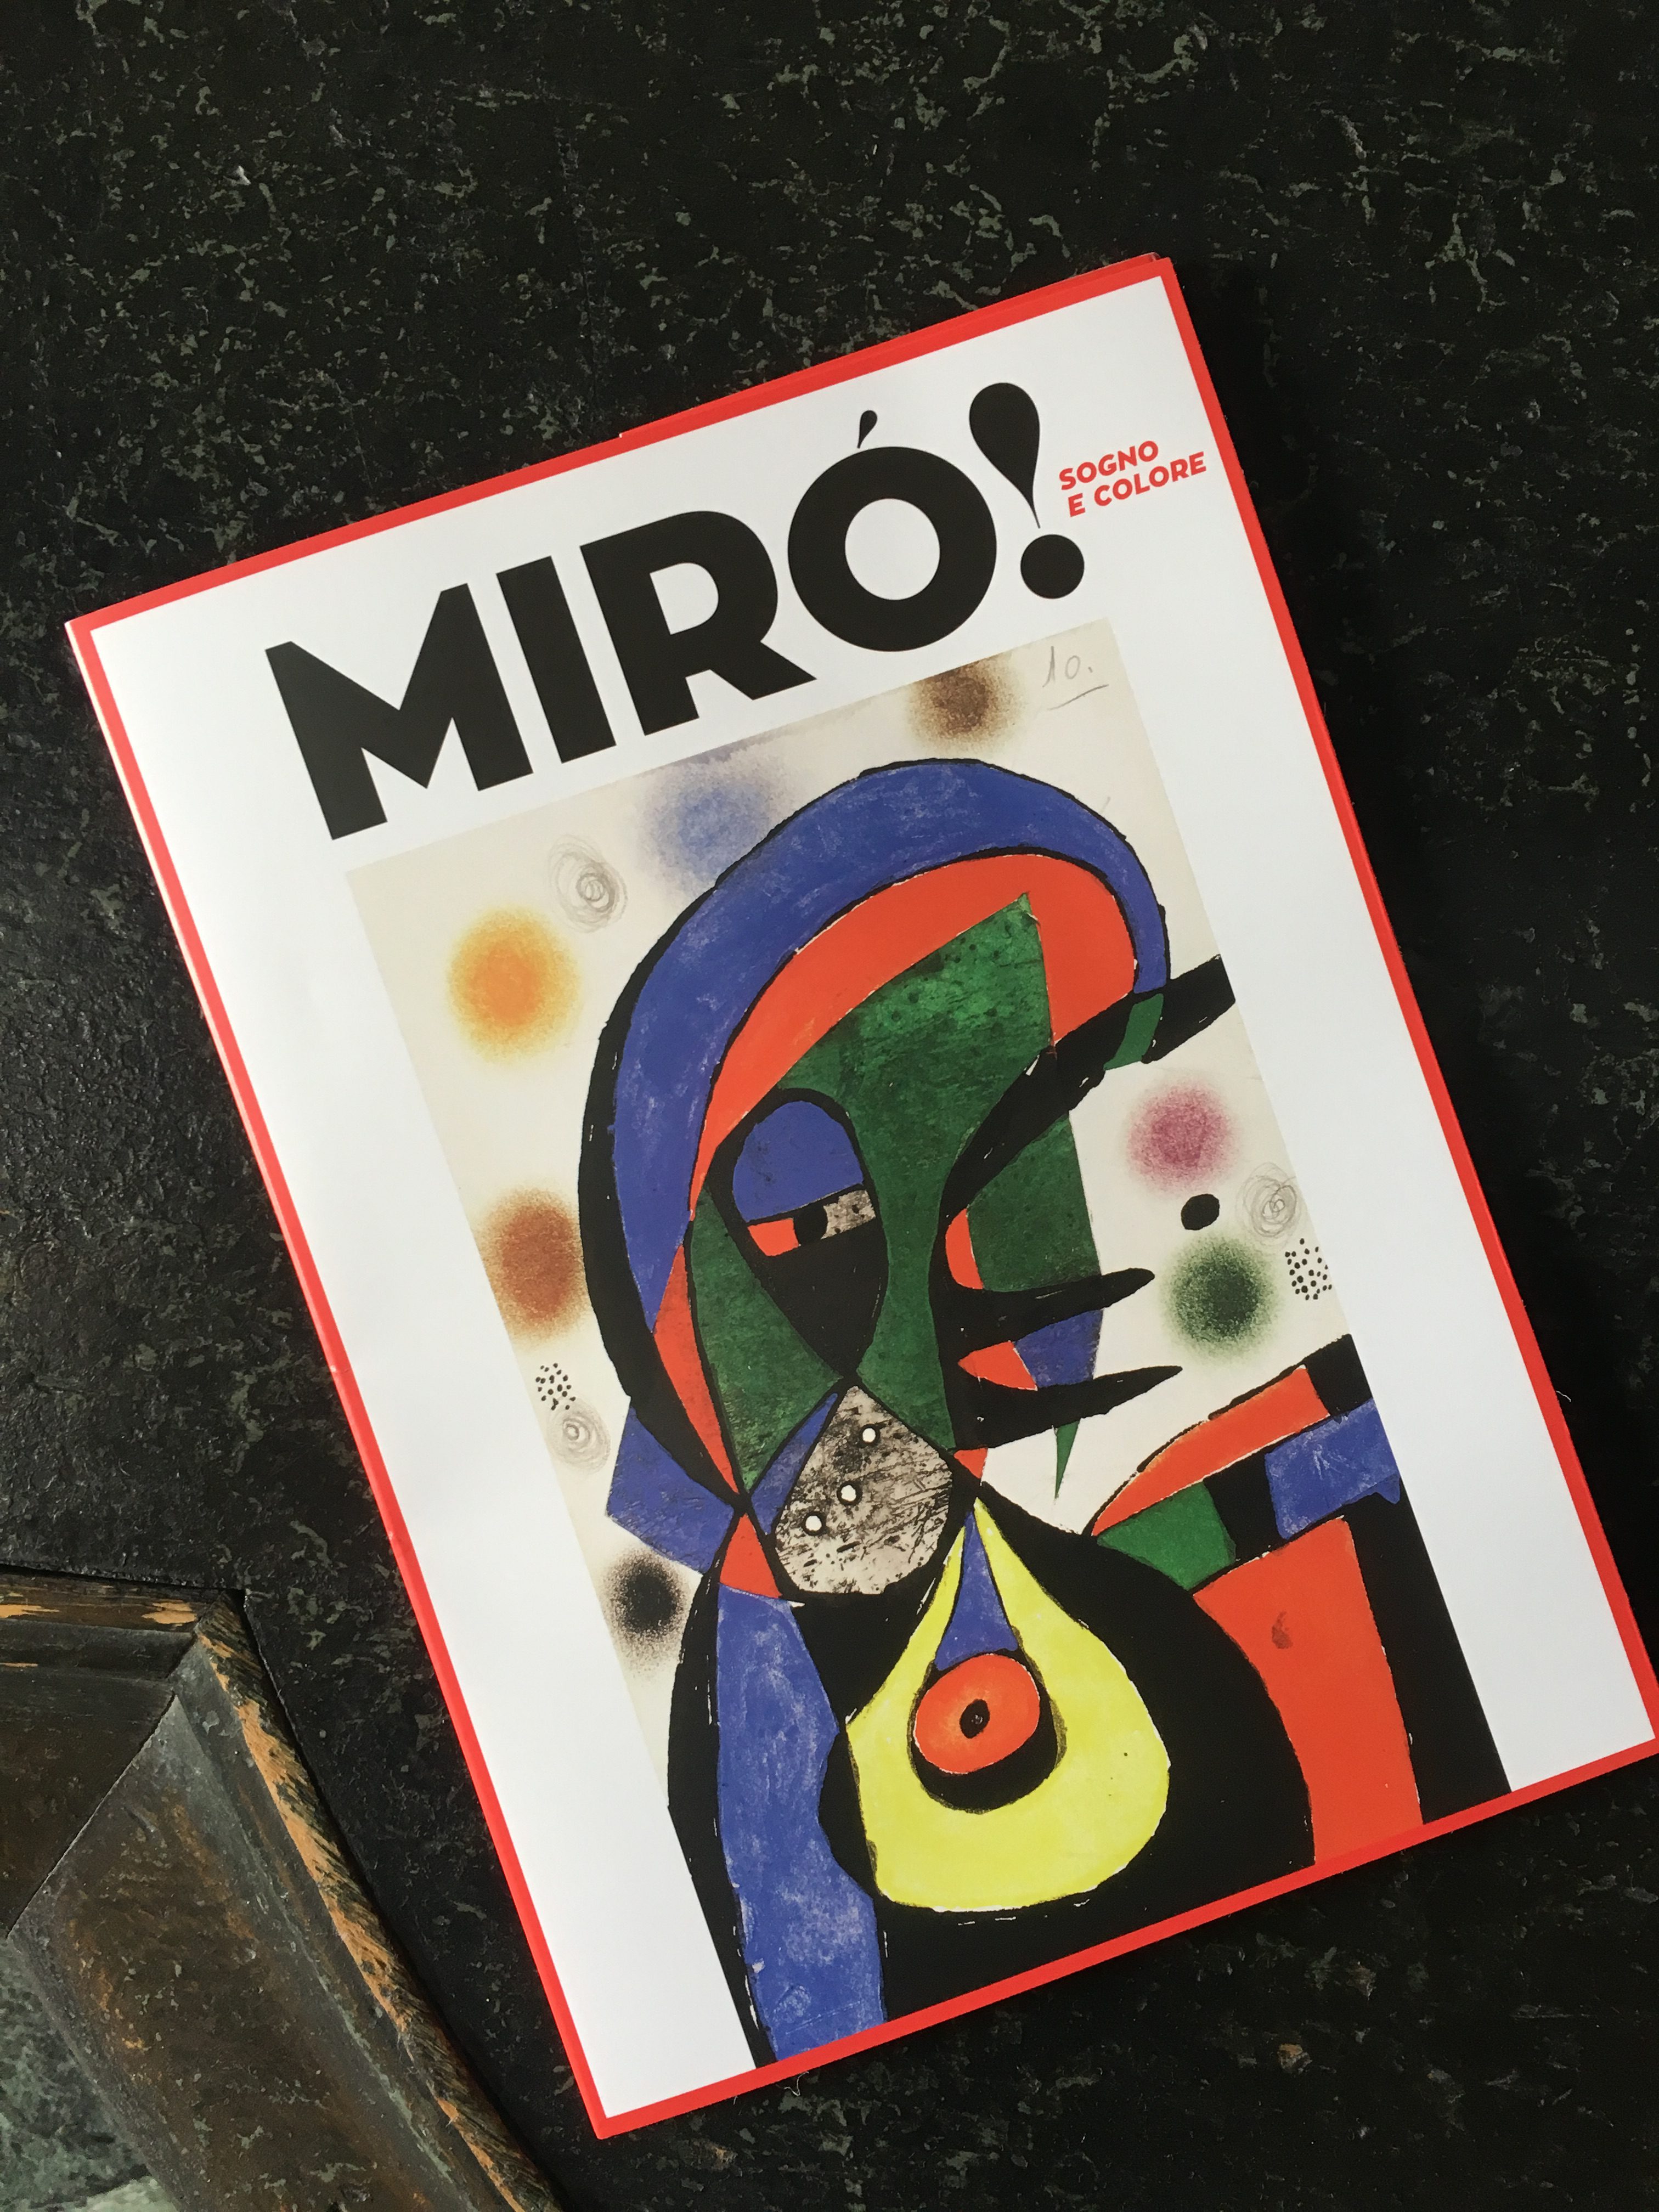 Miró - Sogno E Colore